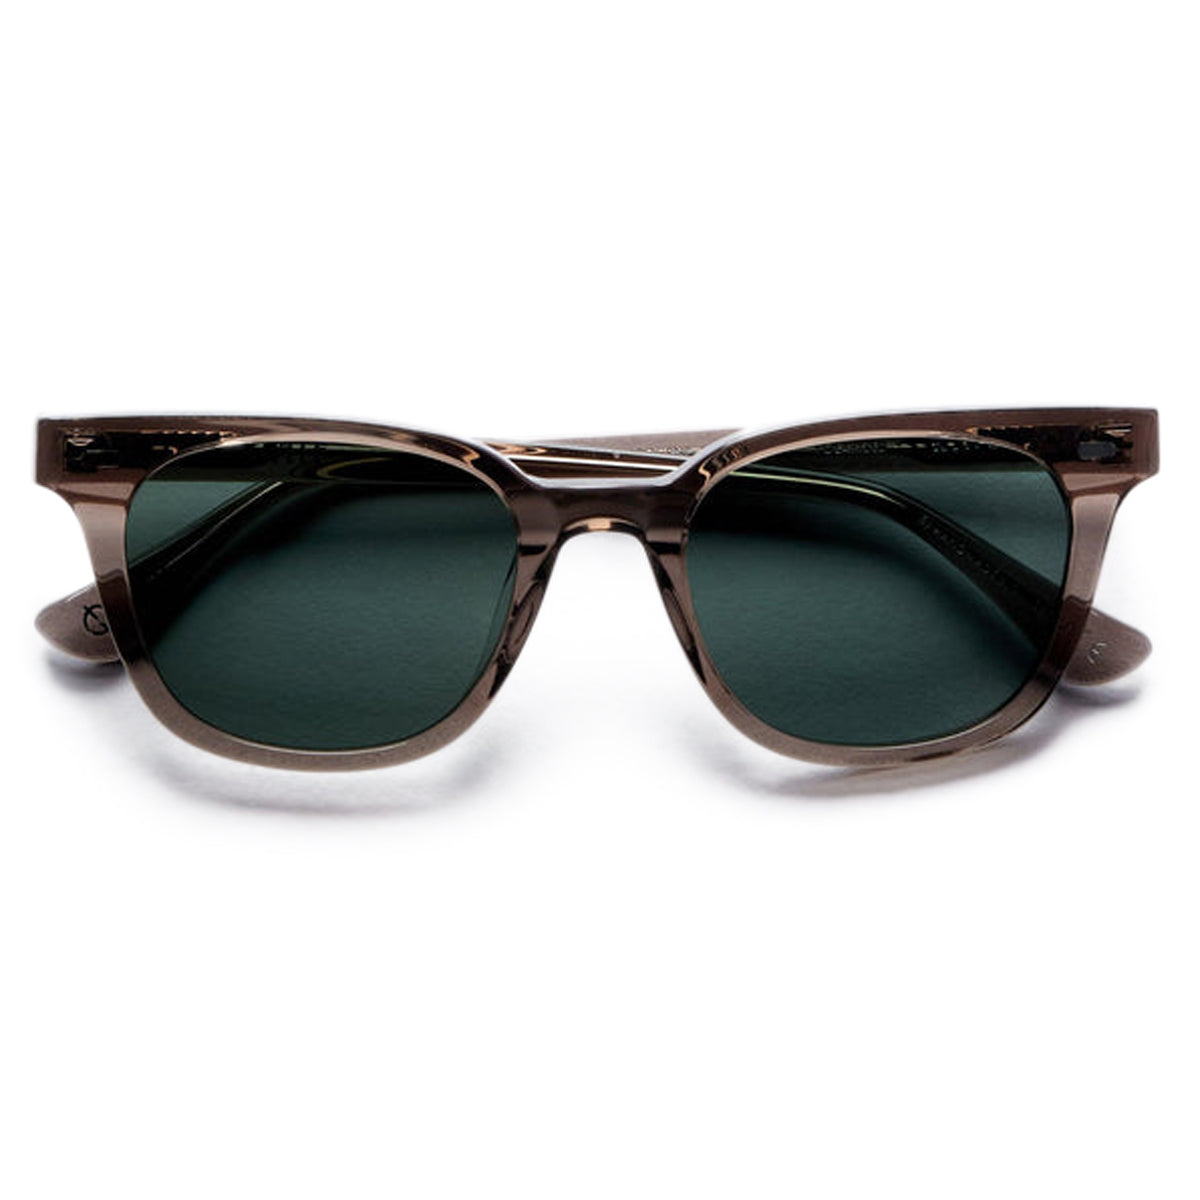 Epokhe Kino Sunglasses - Carbon Polished/Green Polarized image 2